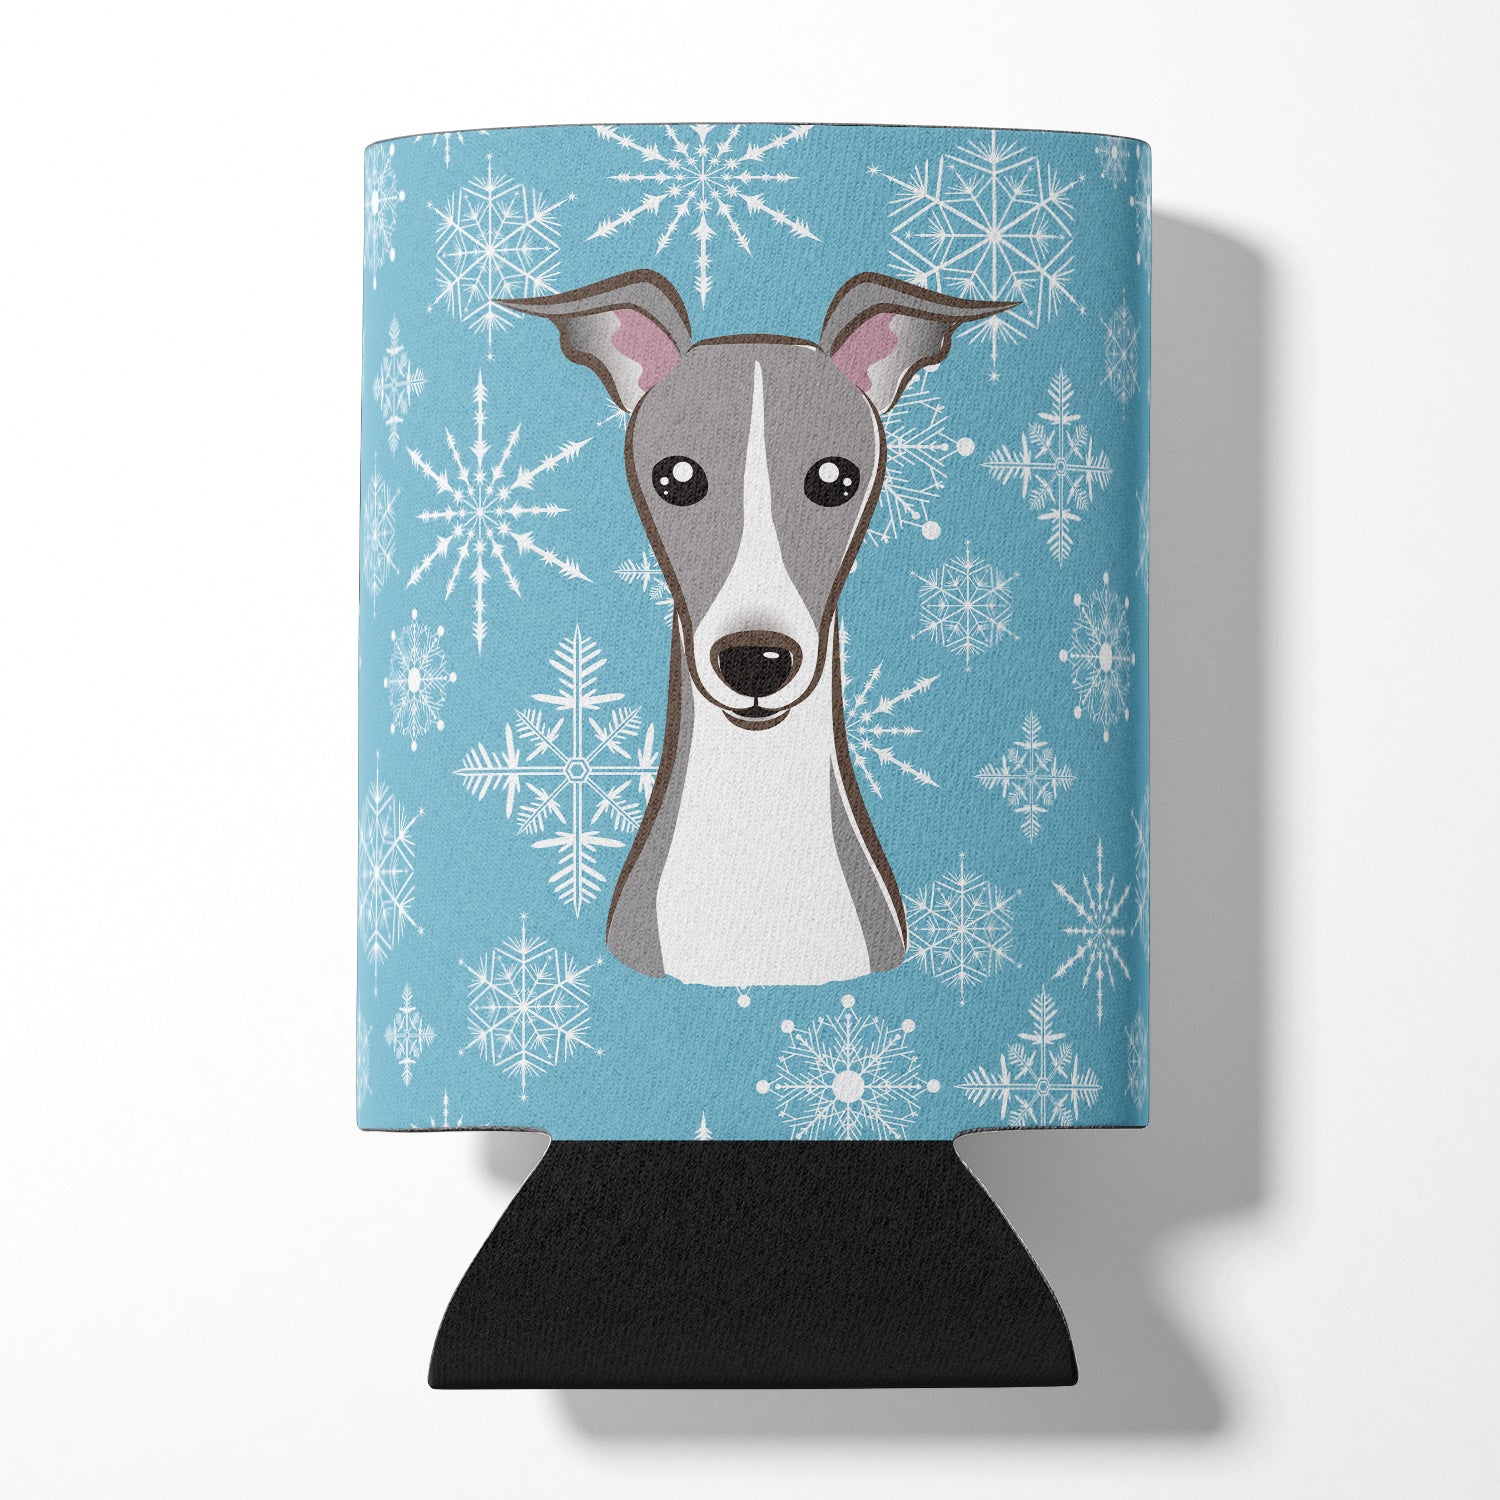 Snowflake Italian Greyhound Porte-canette ou porte-bouteille BB1670CC